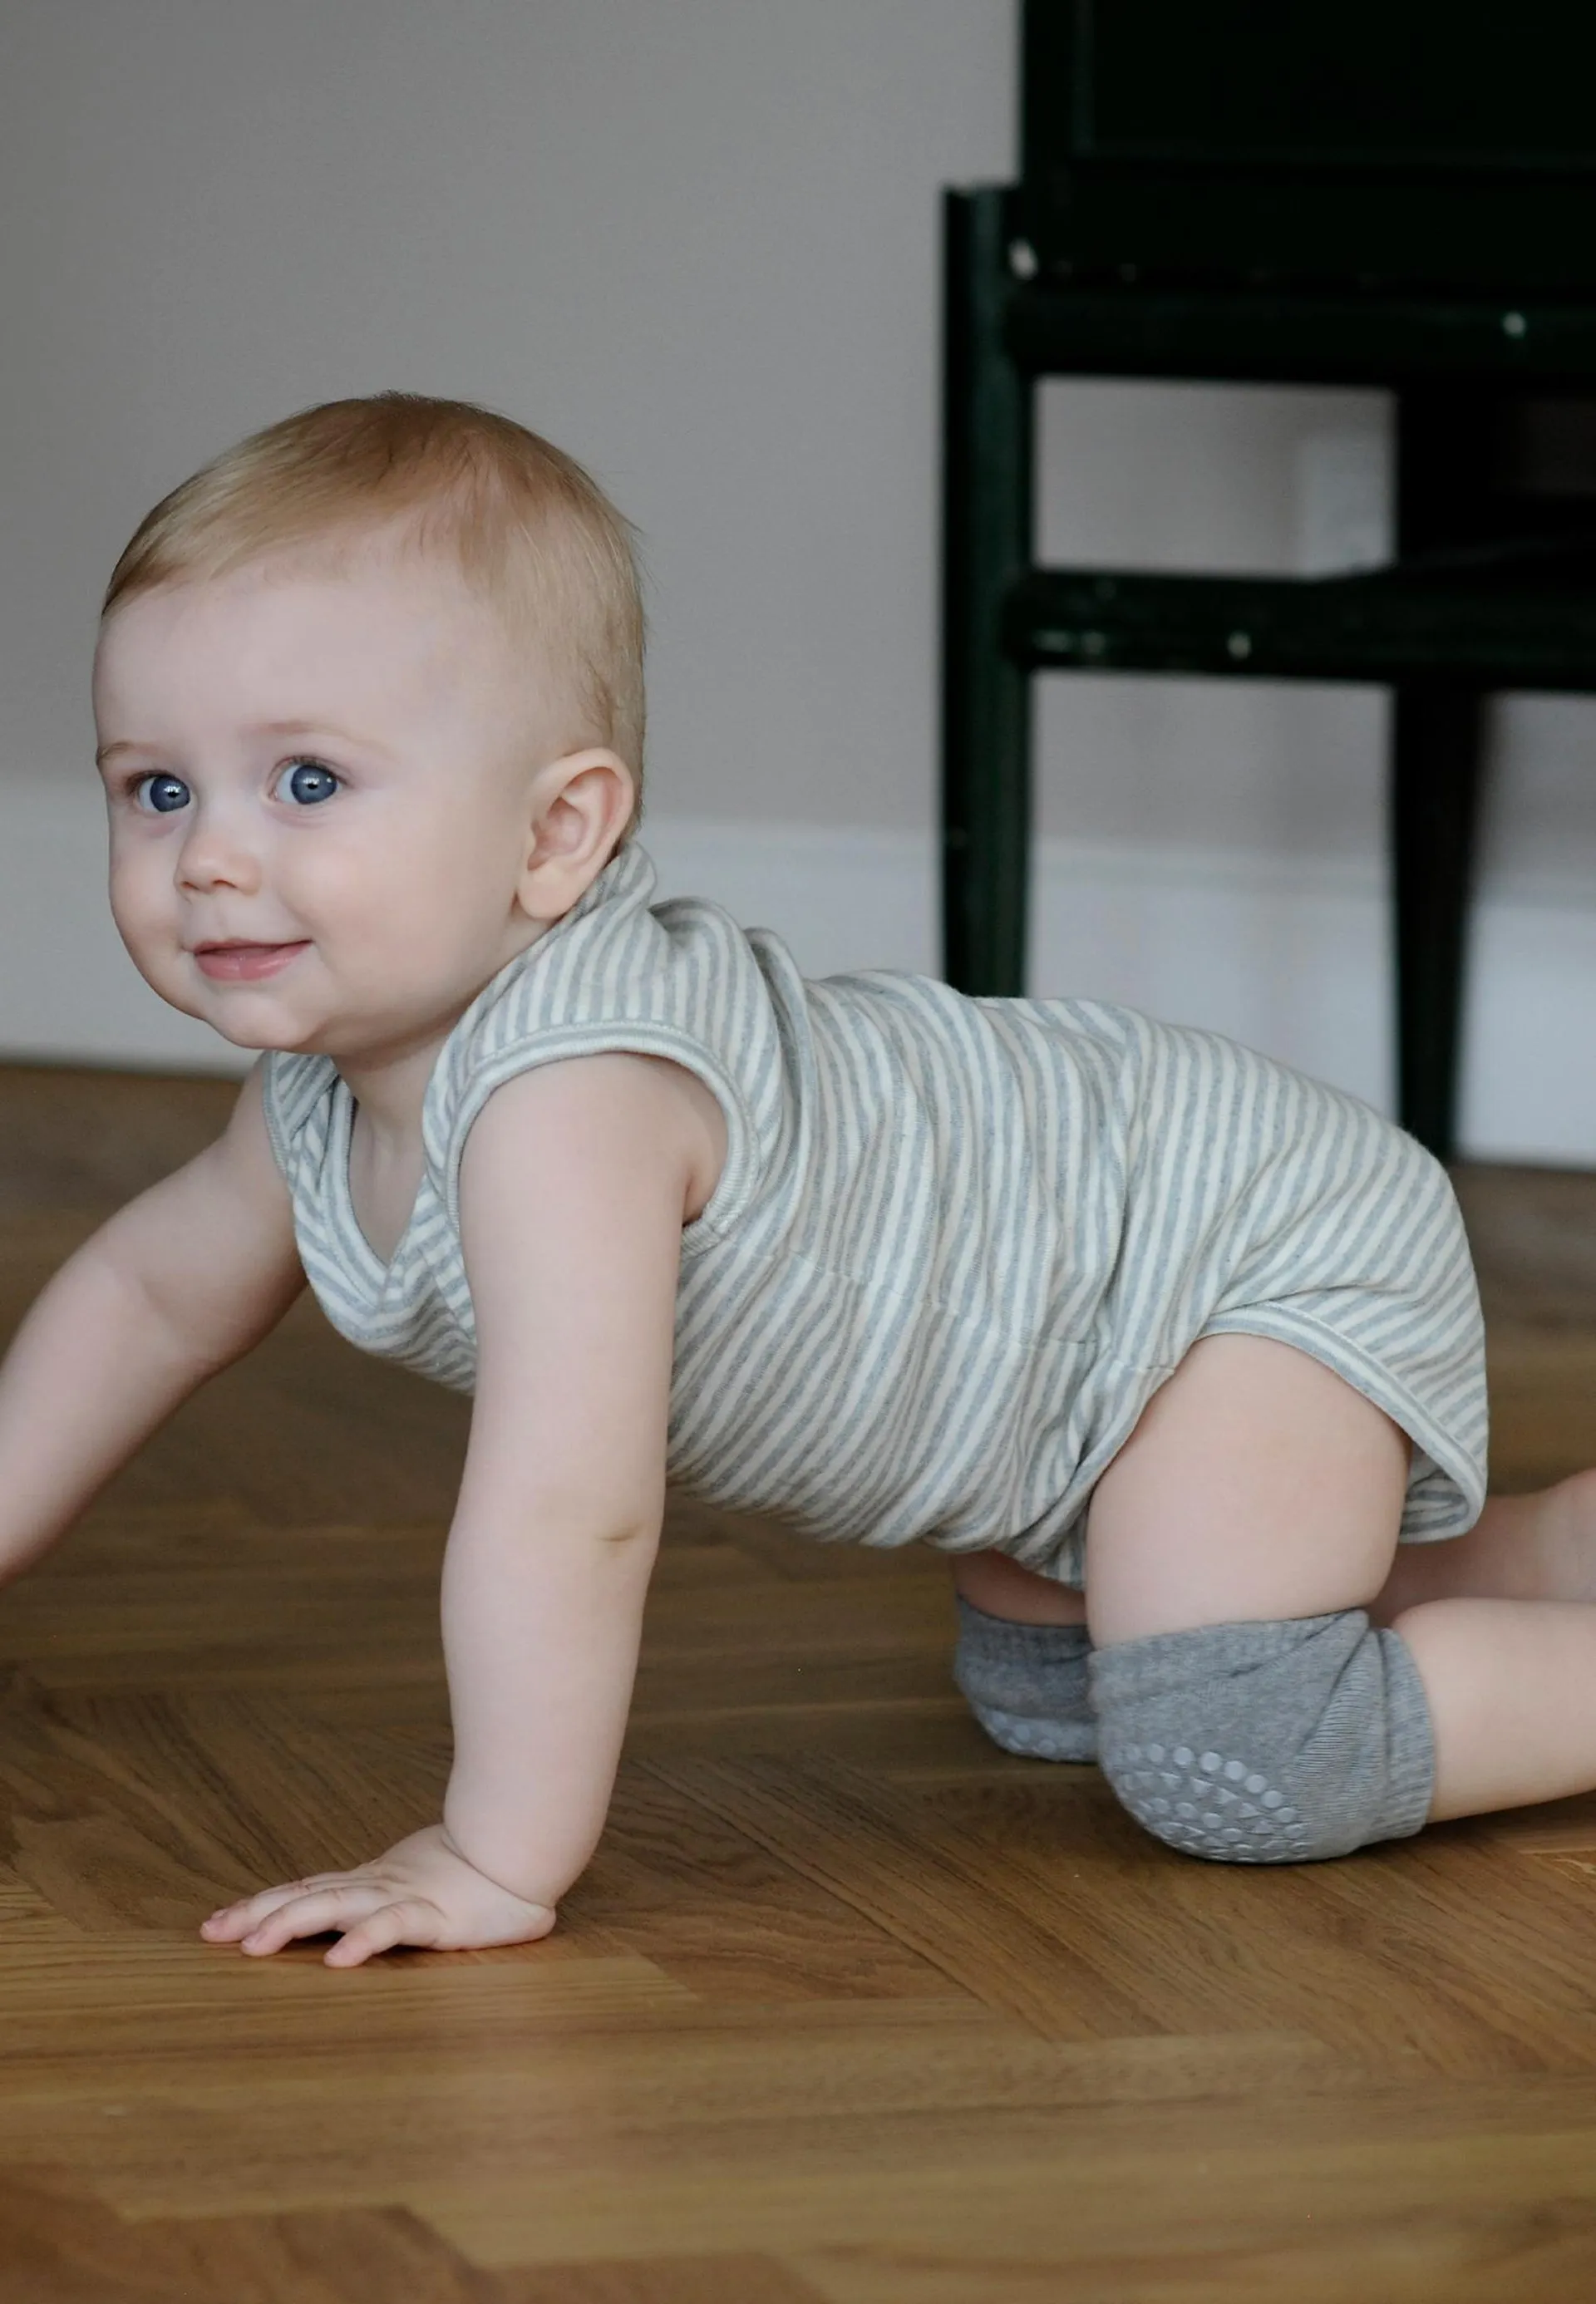 Crawling baby-kneepads